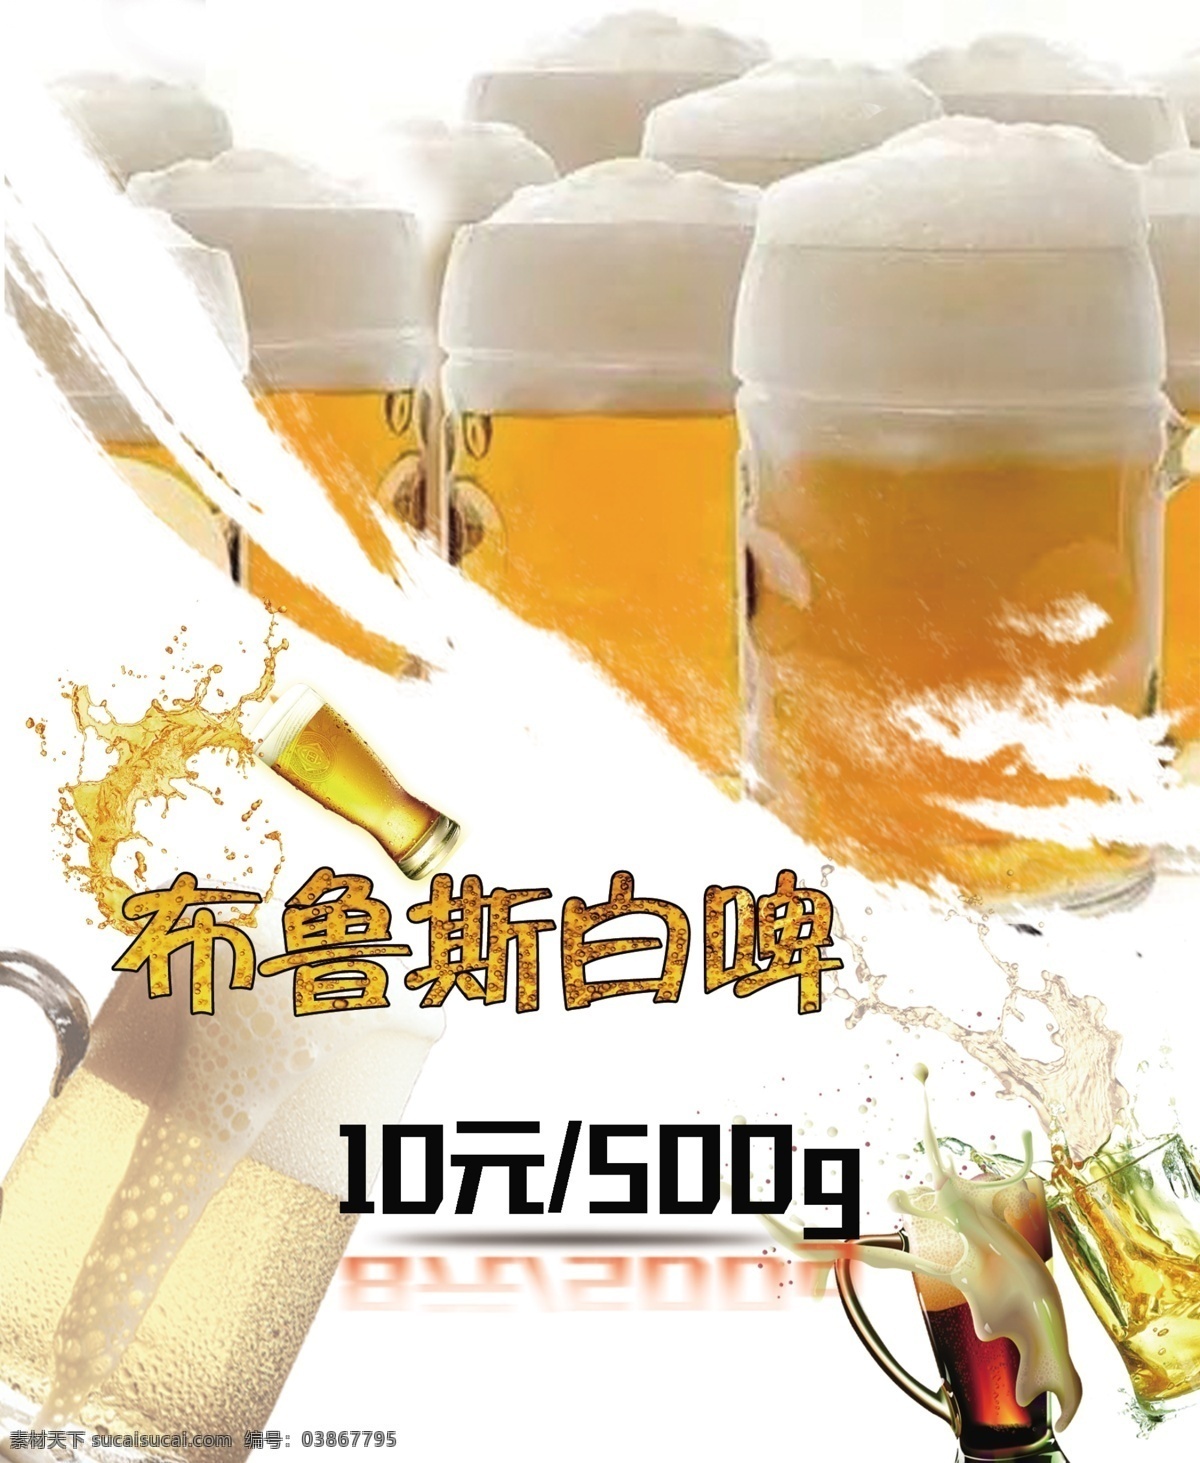 酒吧饭店灯箱 啤酒 鲜啤 花甲 小龙虾 灯箱 海报 中国风 个性字体